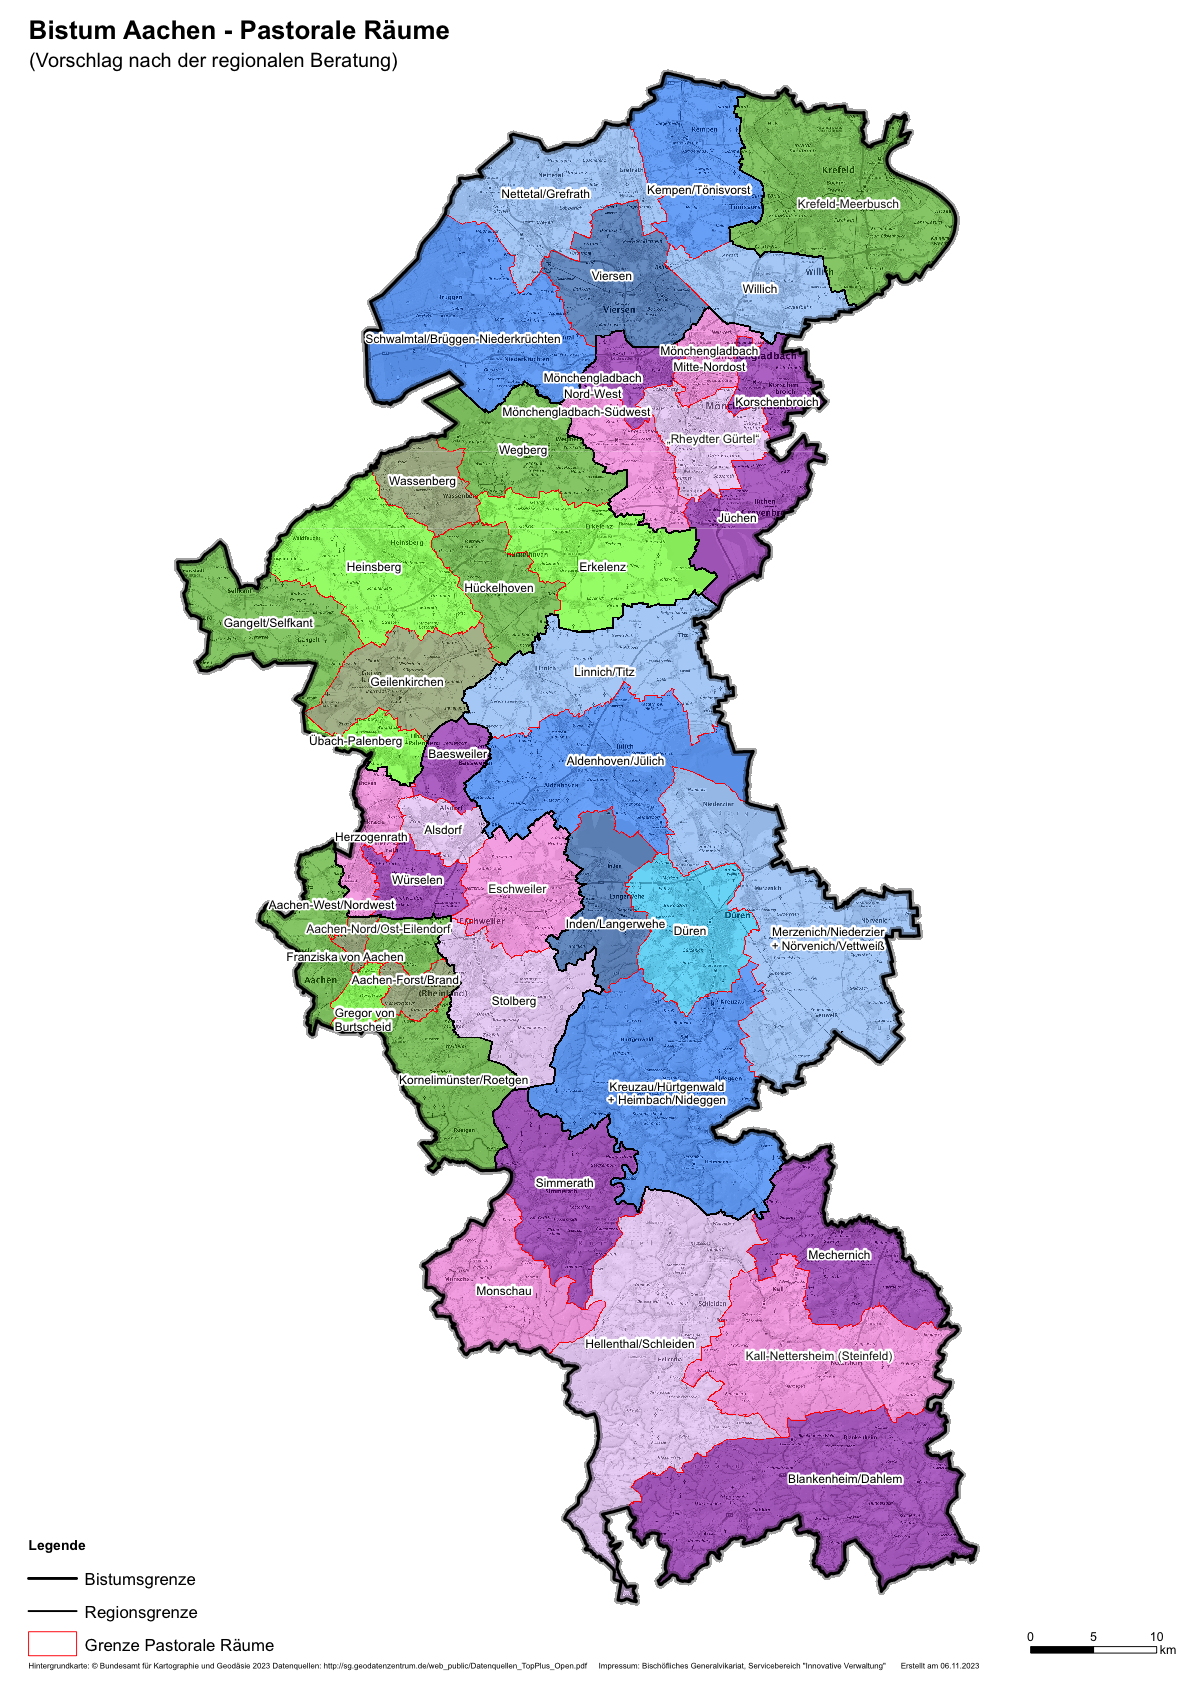 Die Vorschläge der acht Bistumsregionen für die Pastoralen Räume. (c) Bistum Aachen